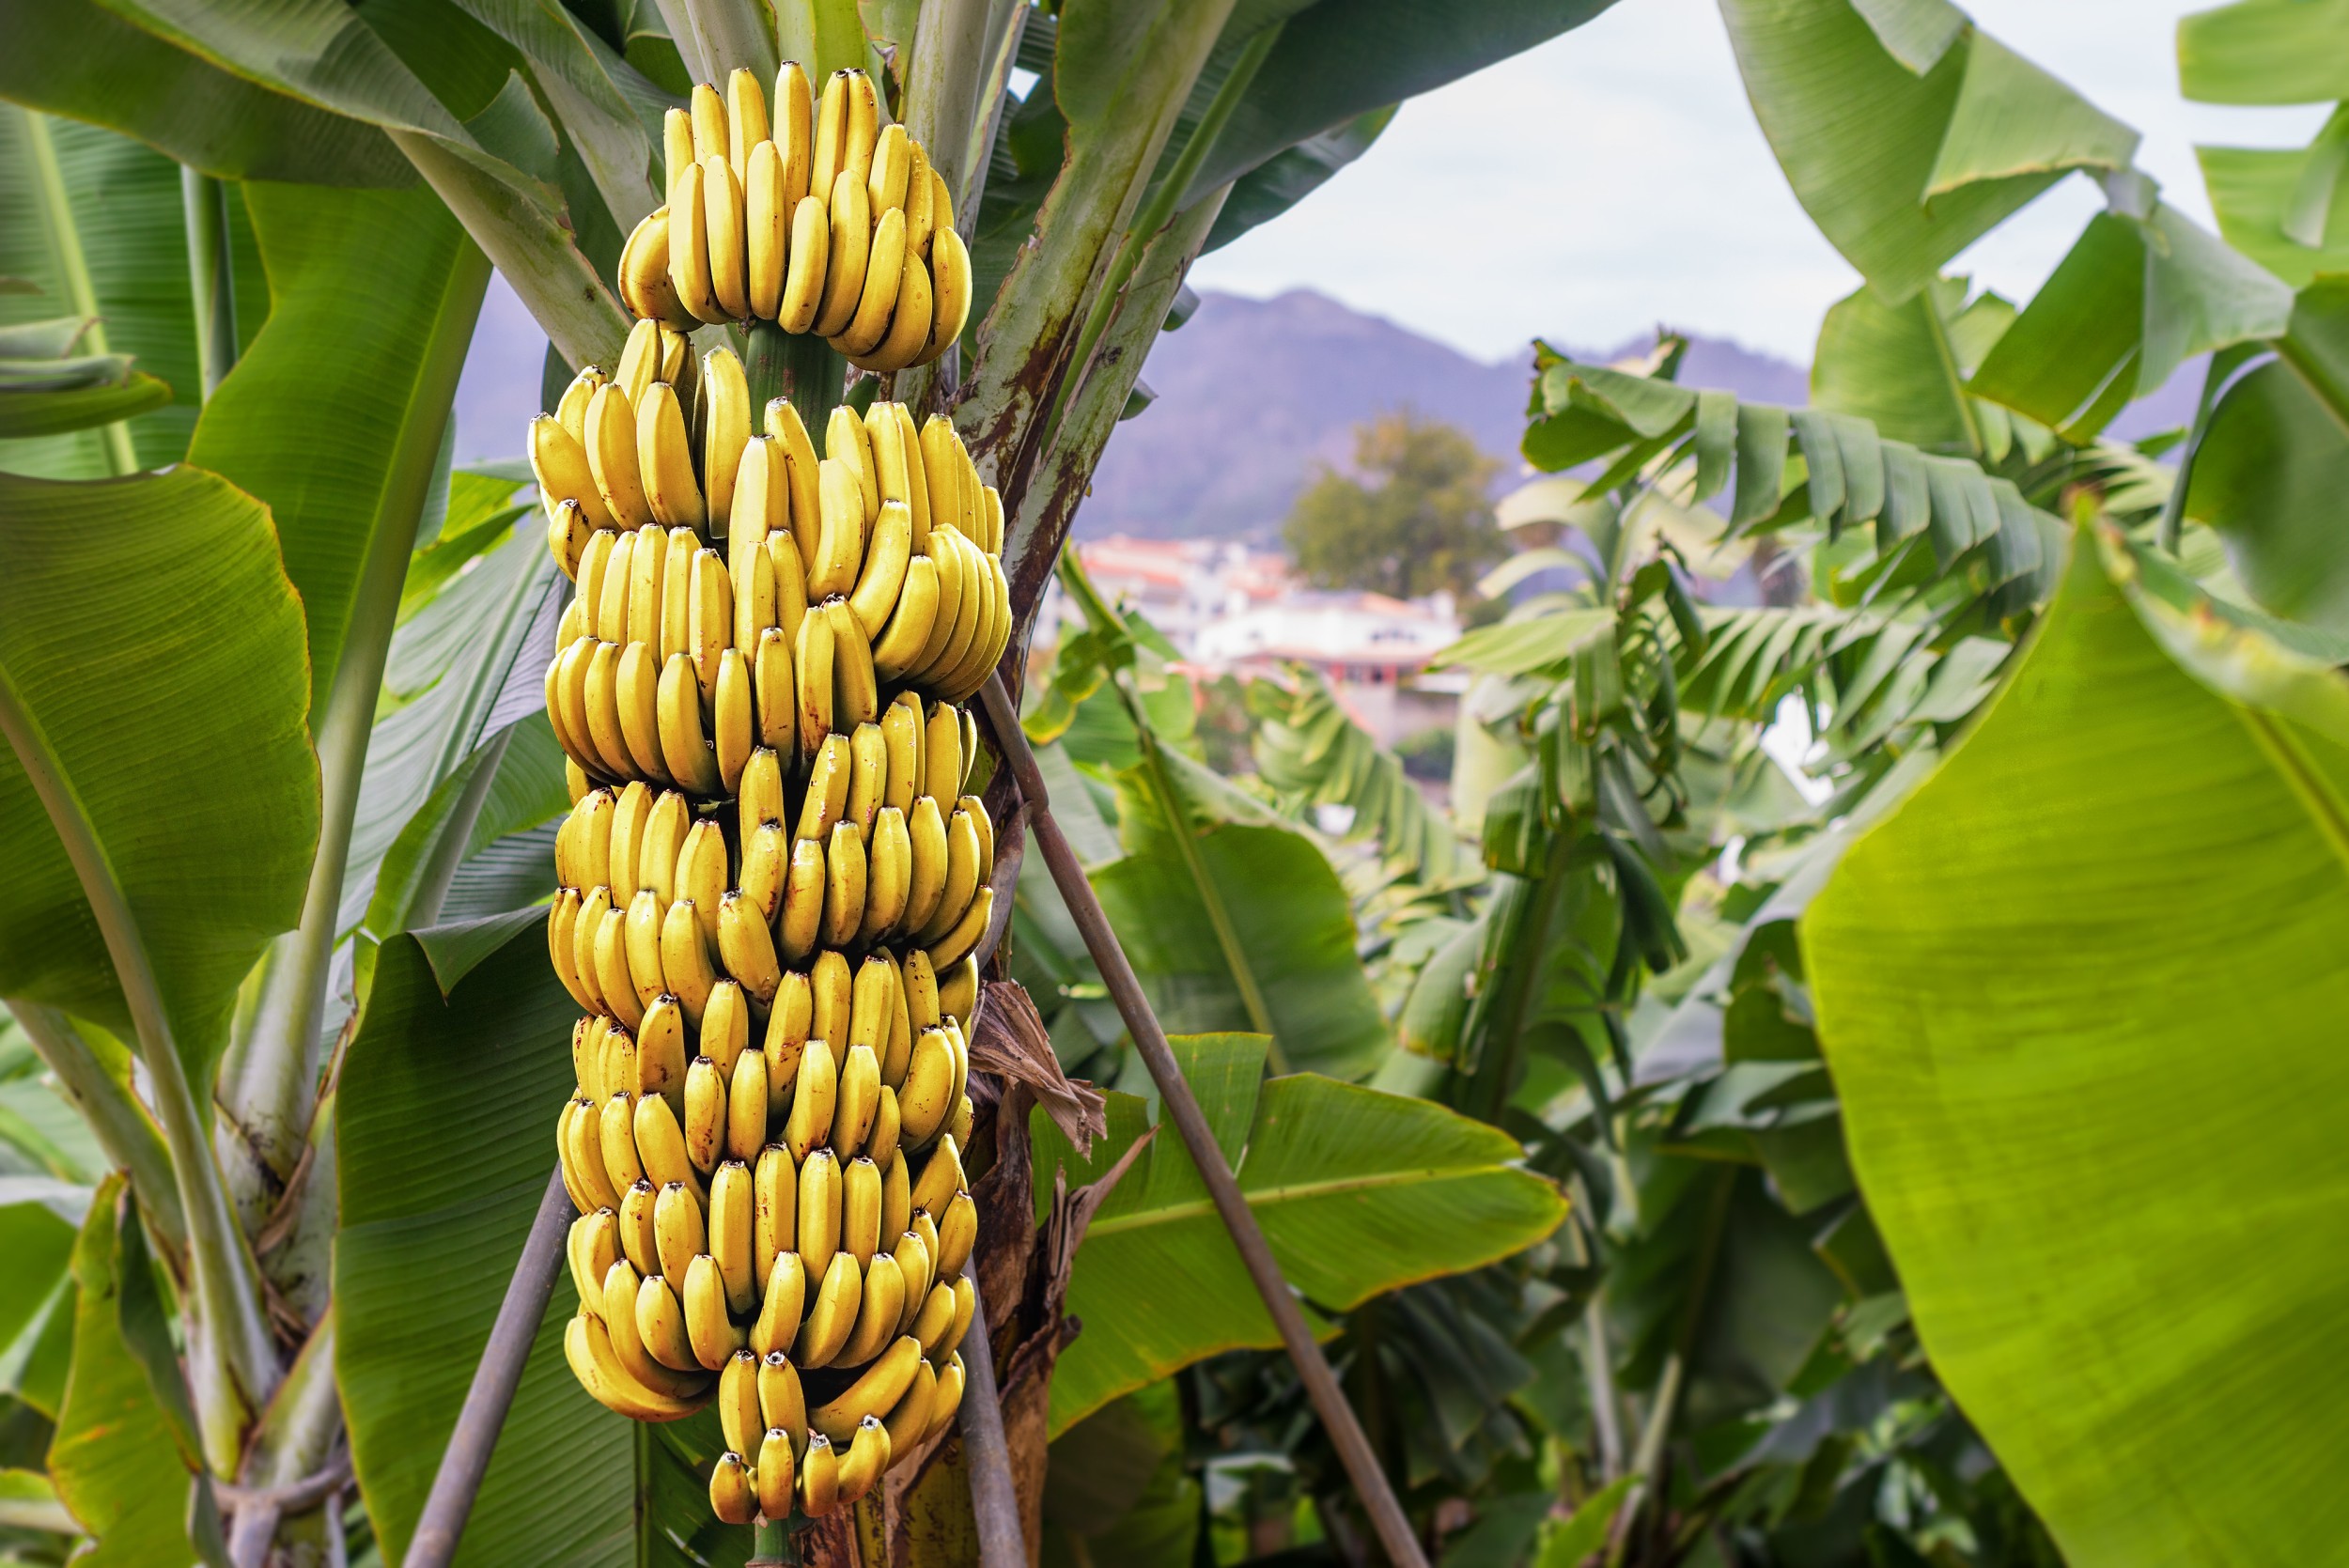 Cara pembiakan semula jadi pokok pisang